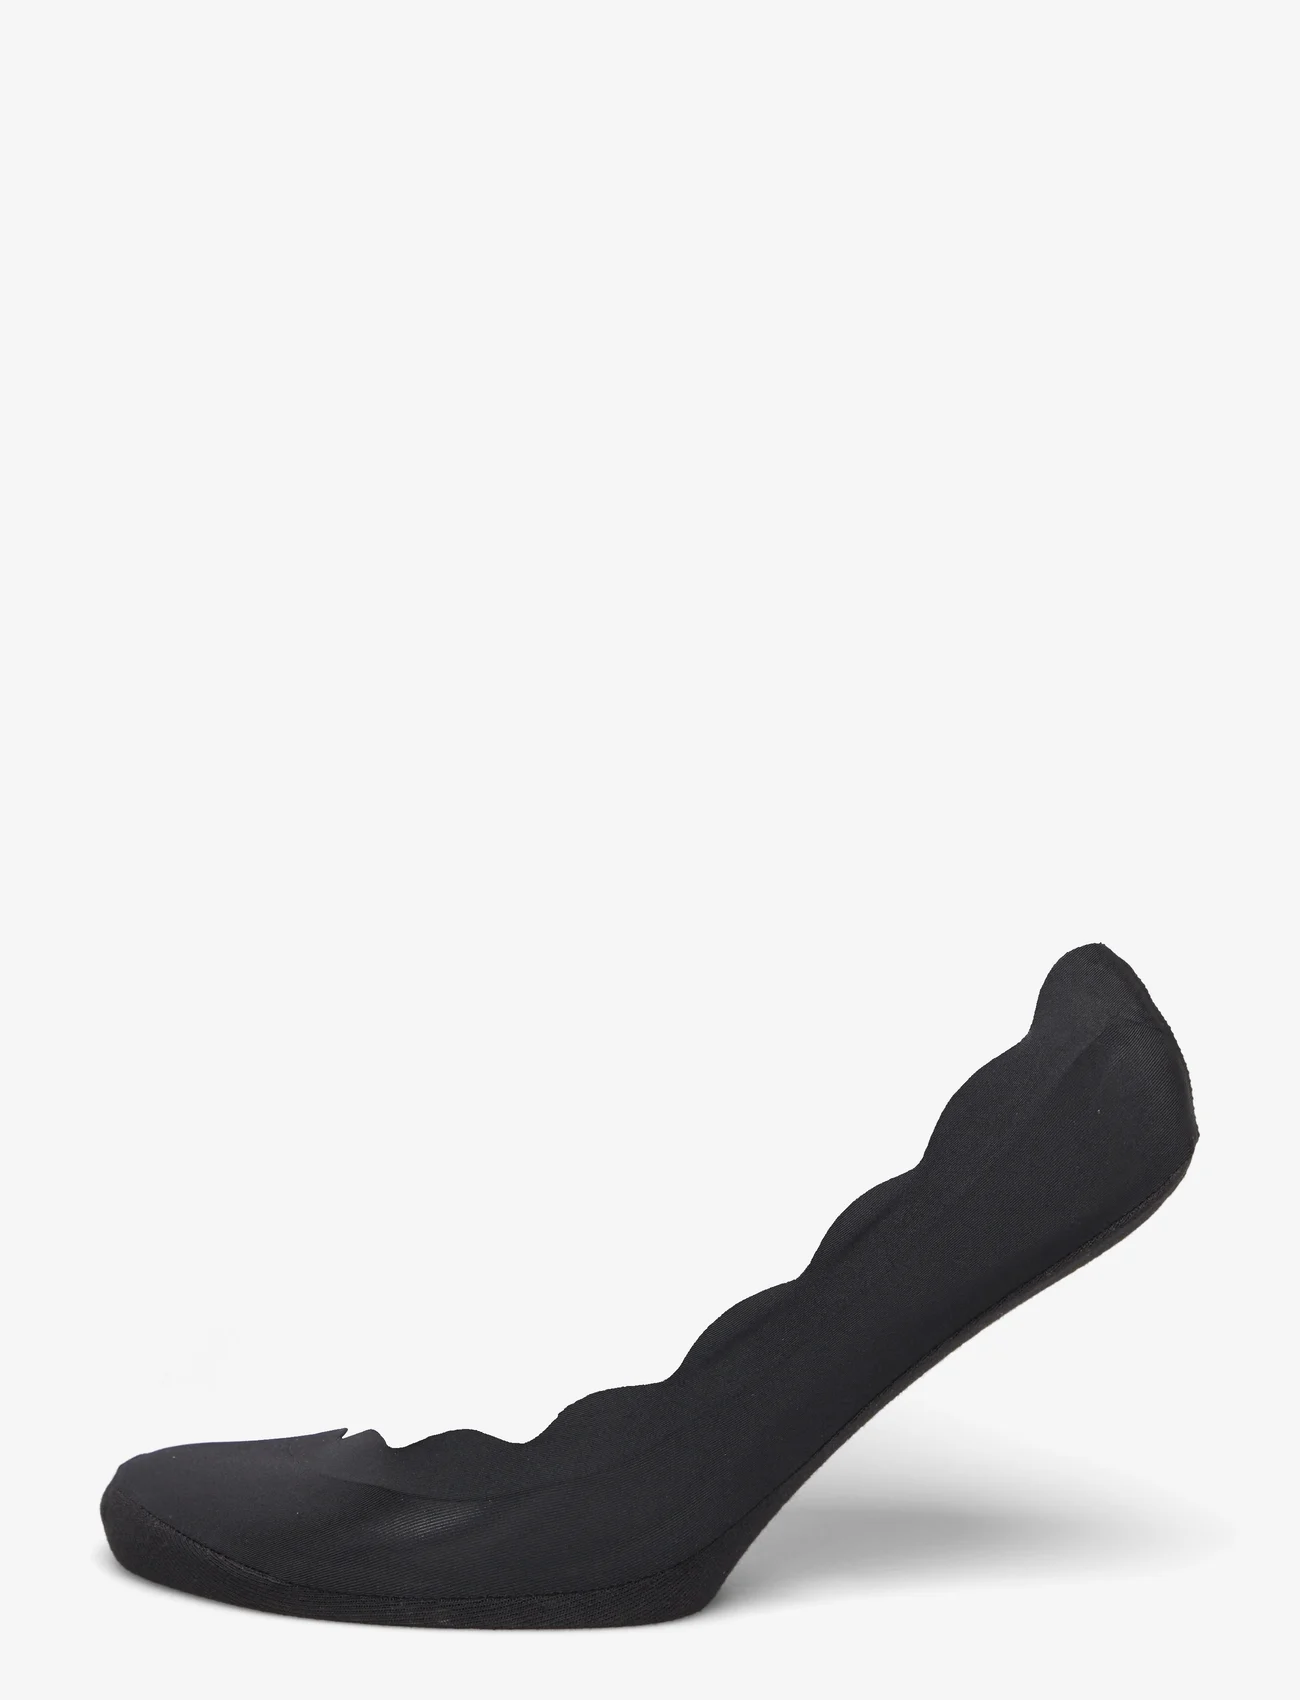 mp Denmark - Carol invisble socks - madalaimad hinnad - black - 0